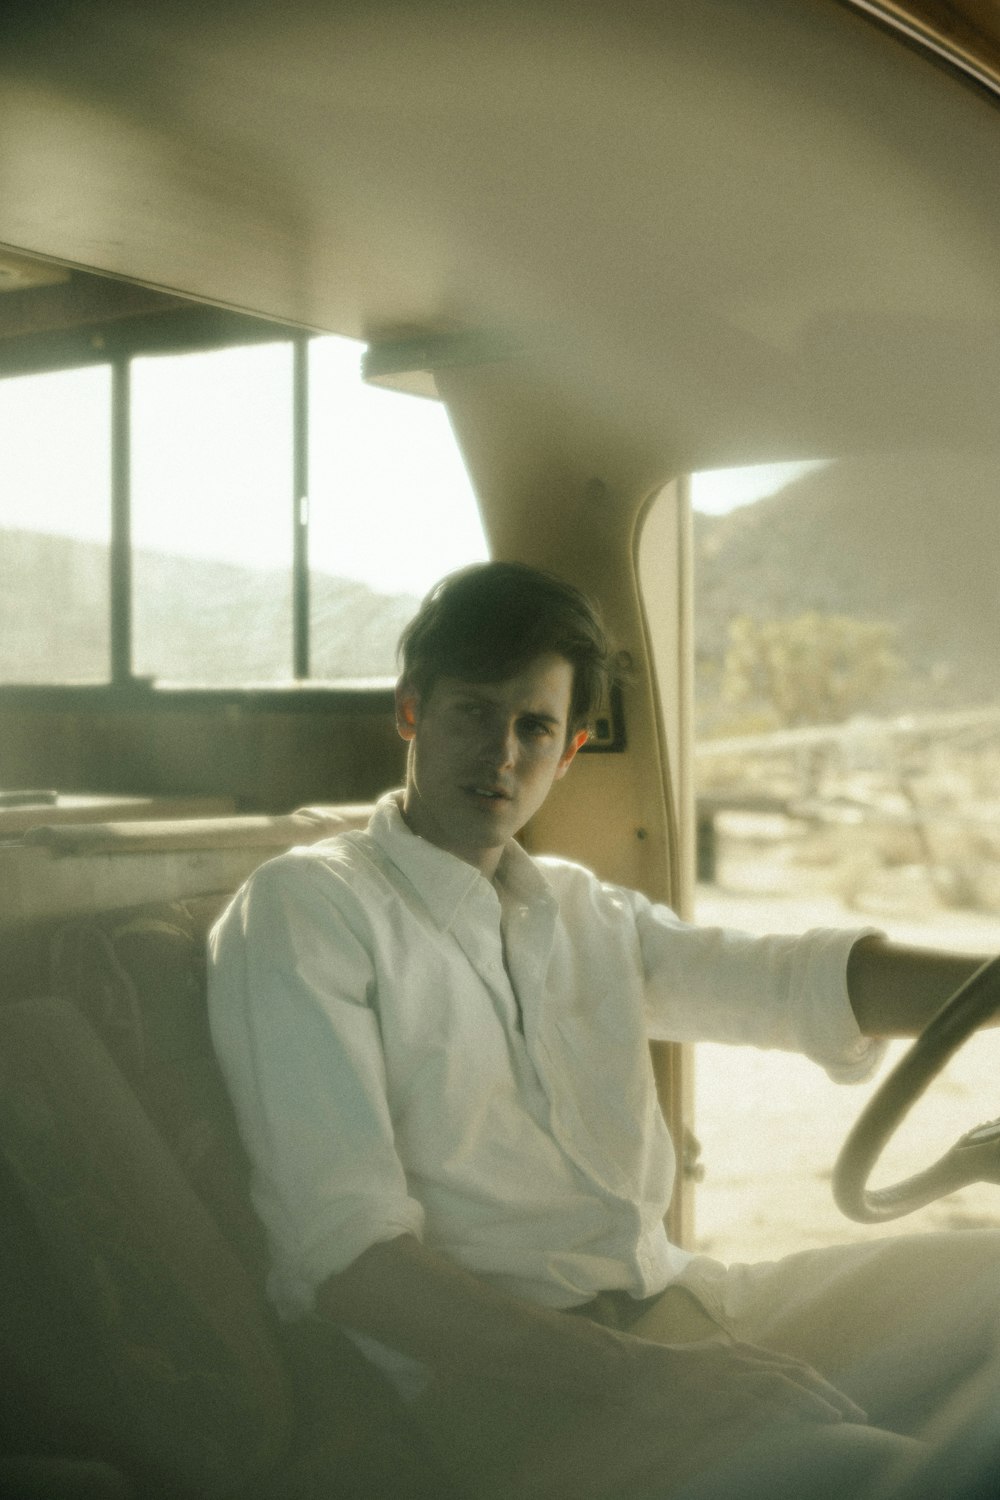 man in white dress shirt sitting on car seat